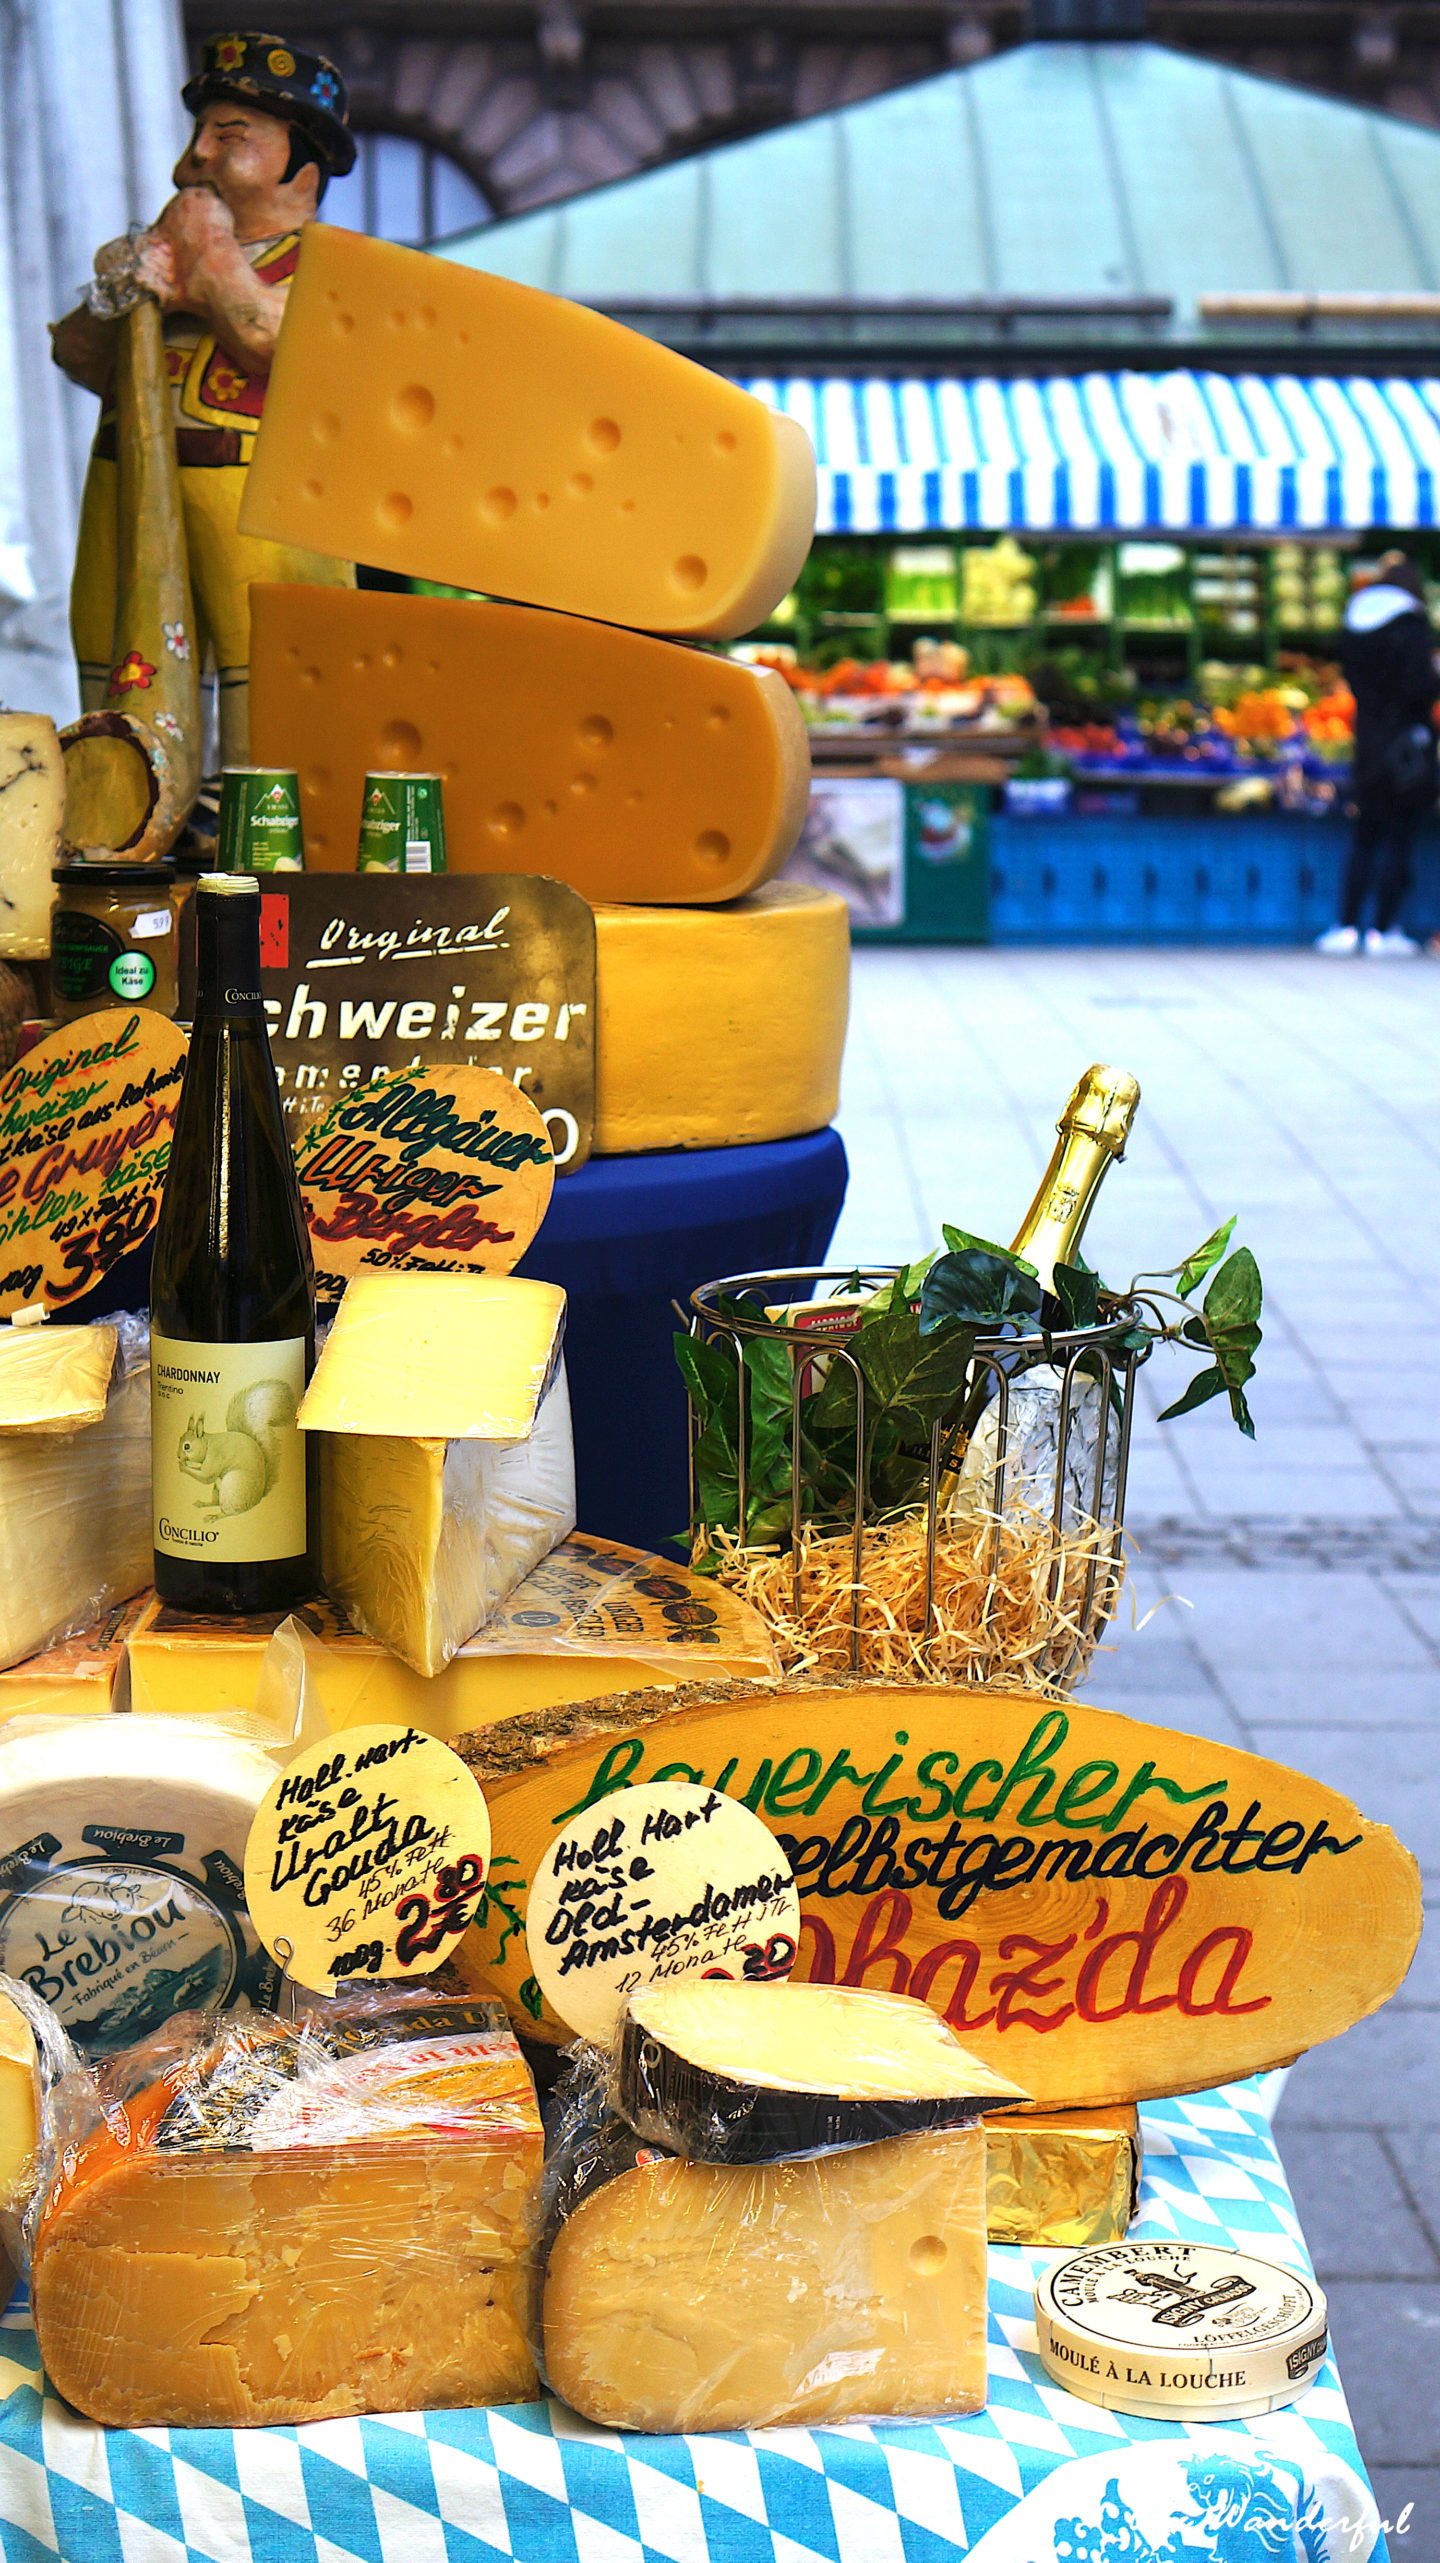 Food stalls at Viktualienmarkt Munich